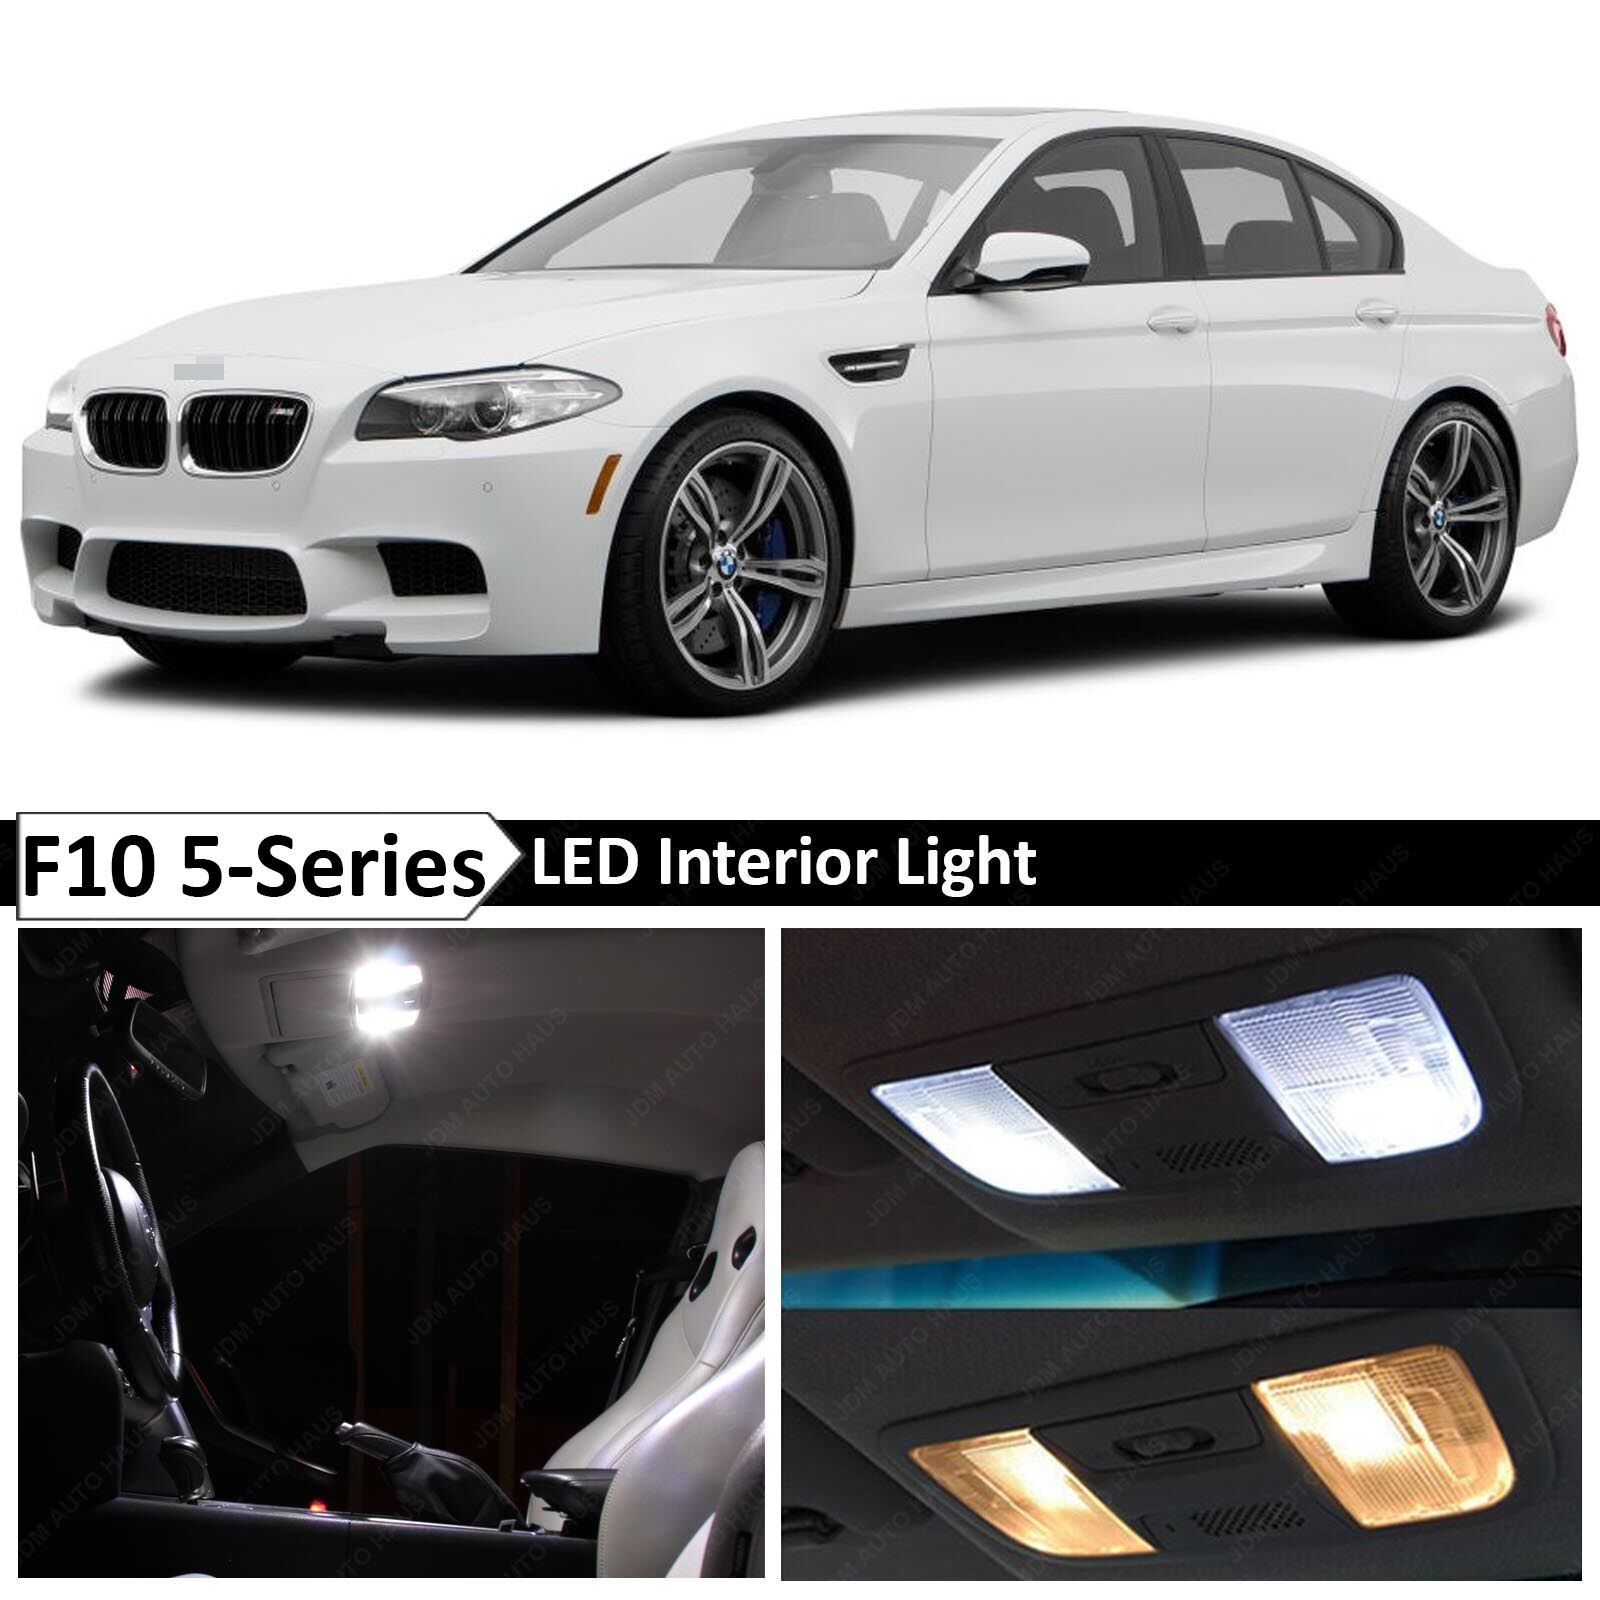 White Interior LED Light Package for 2011-2015 BMW 5 Series M5 535i 550i F10